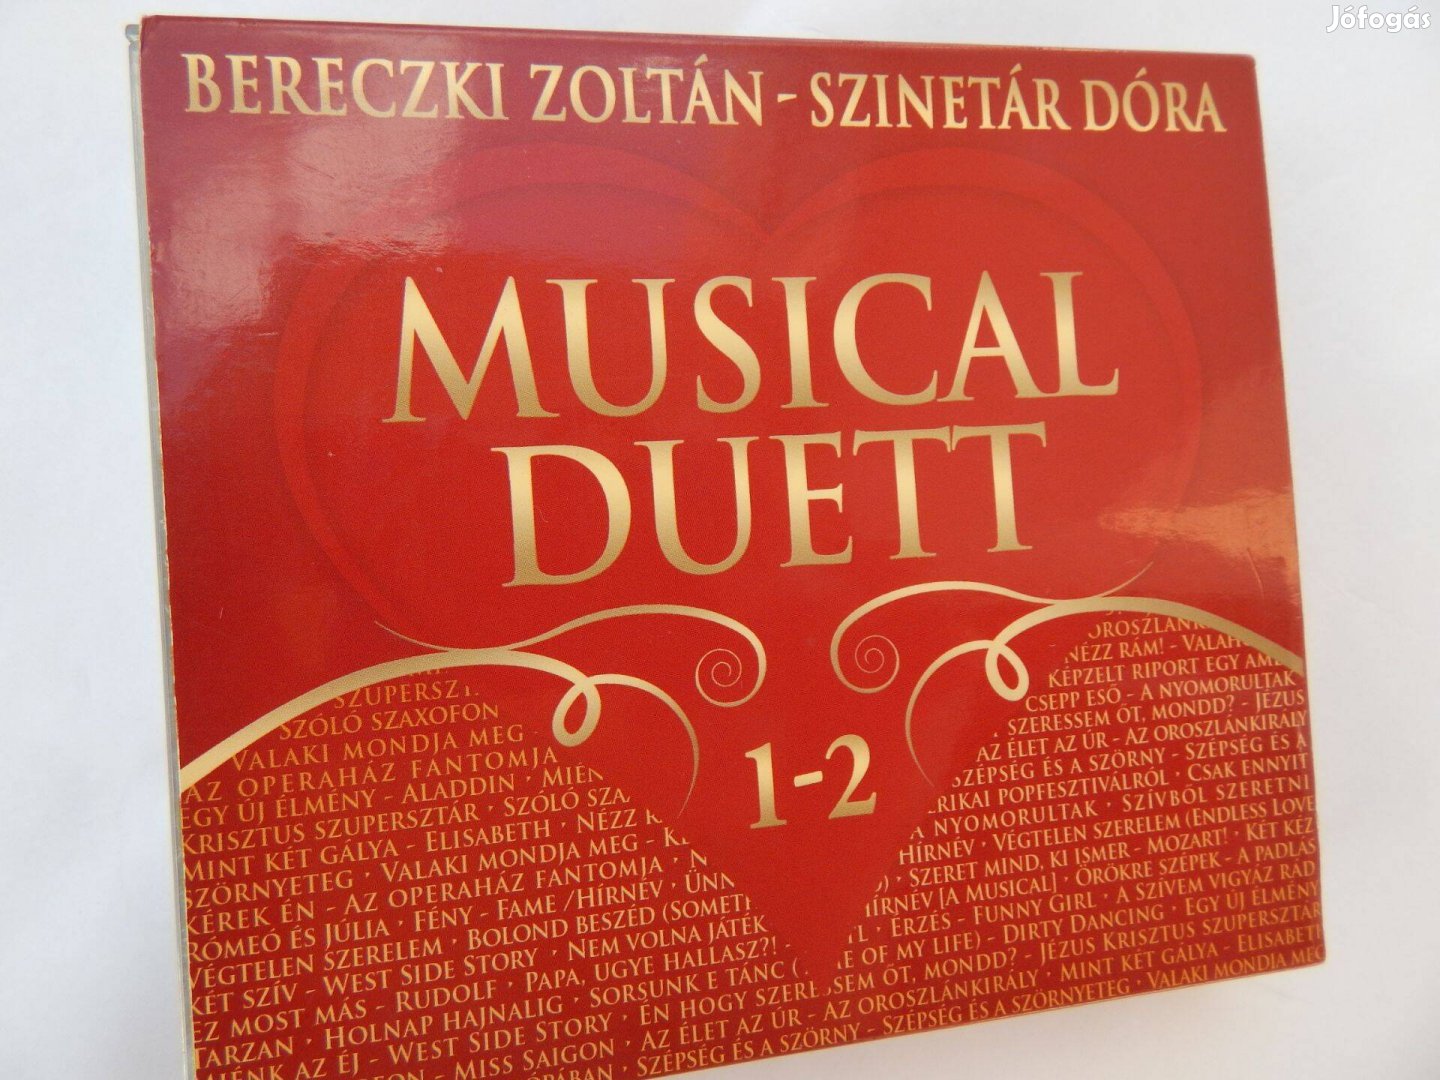 Bereczki Zoltán Szinetár Dóra - Musical Duett 2 Lemezes Audió CD szett